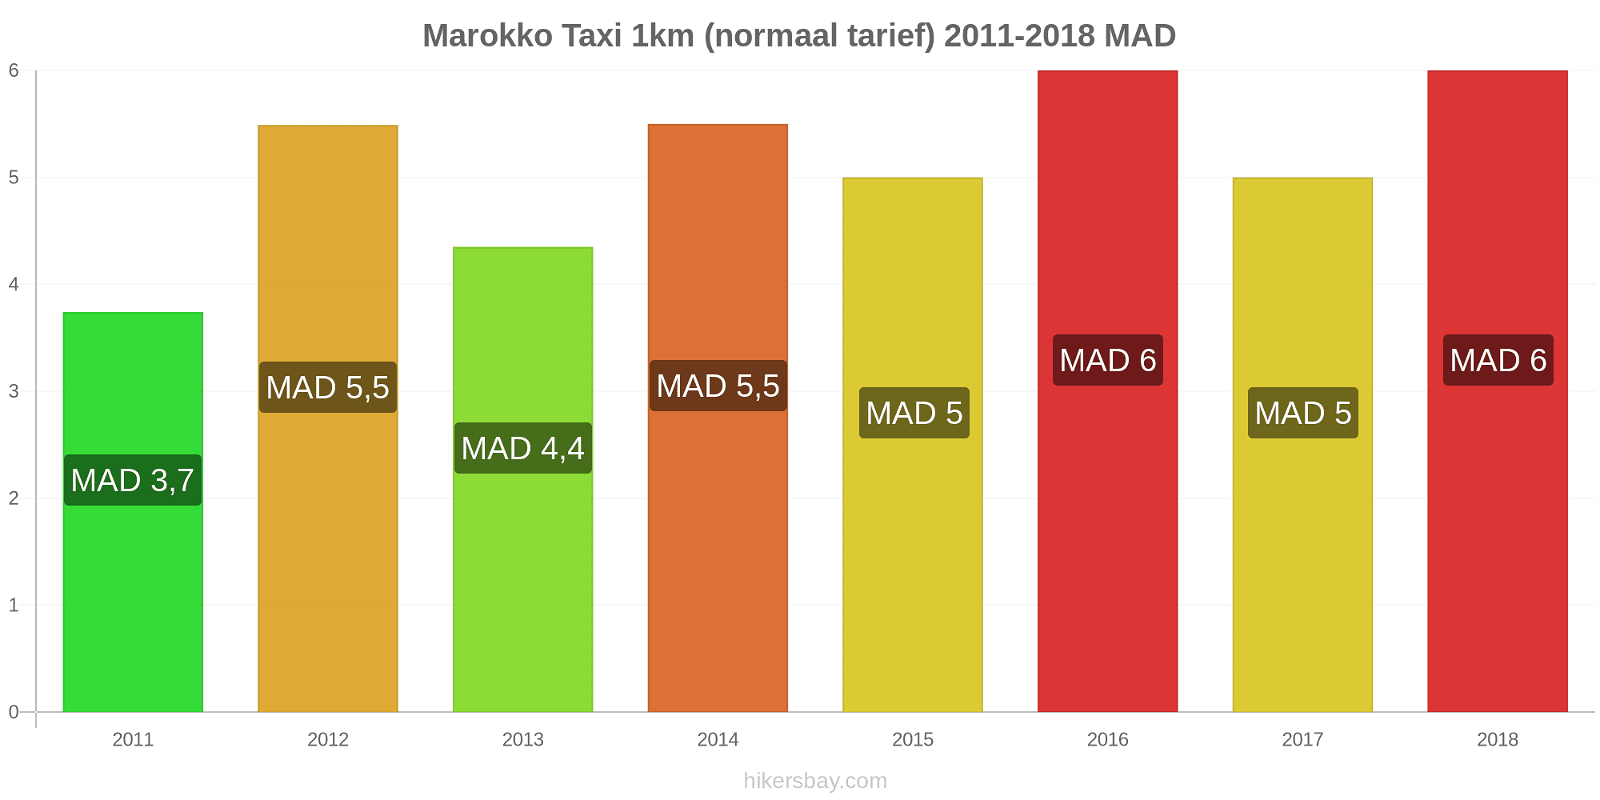 Marokko prijswijzigingen Taxi 1km (normaal tarief) hikersbay.com